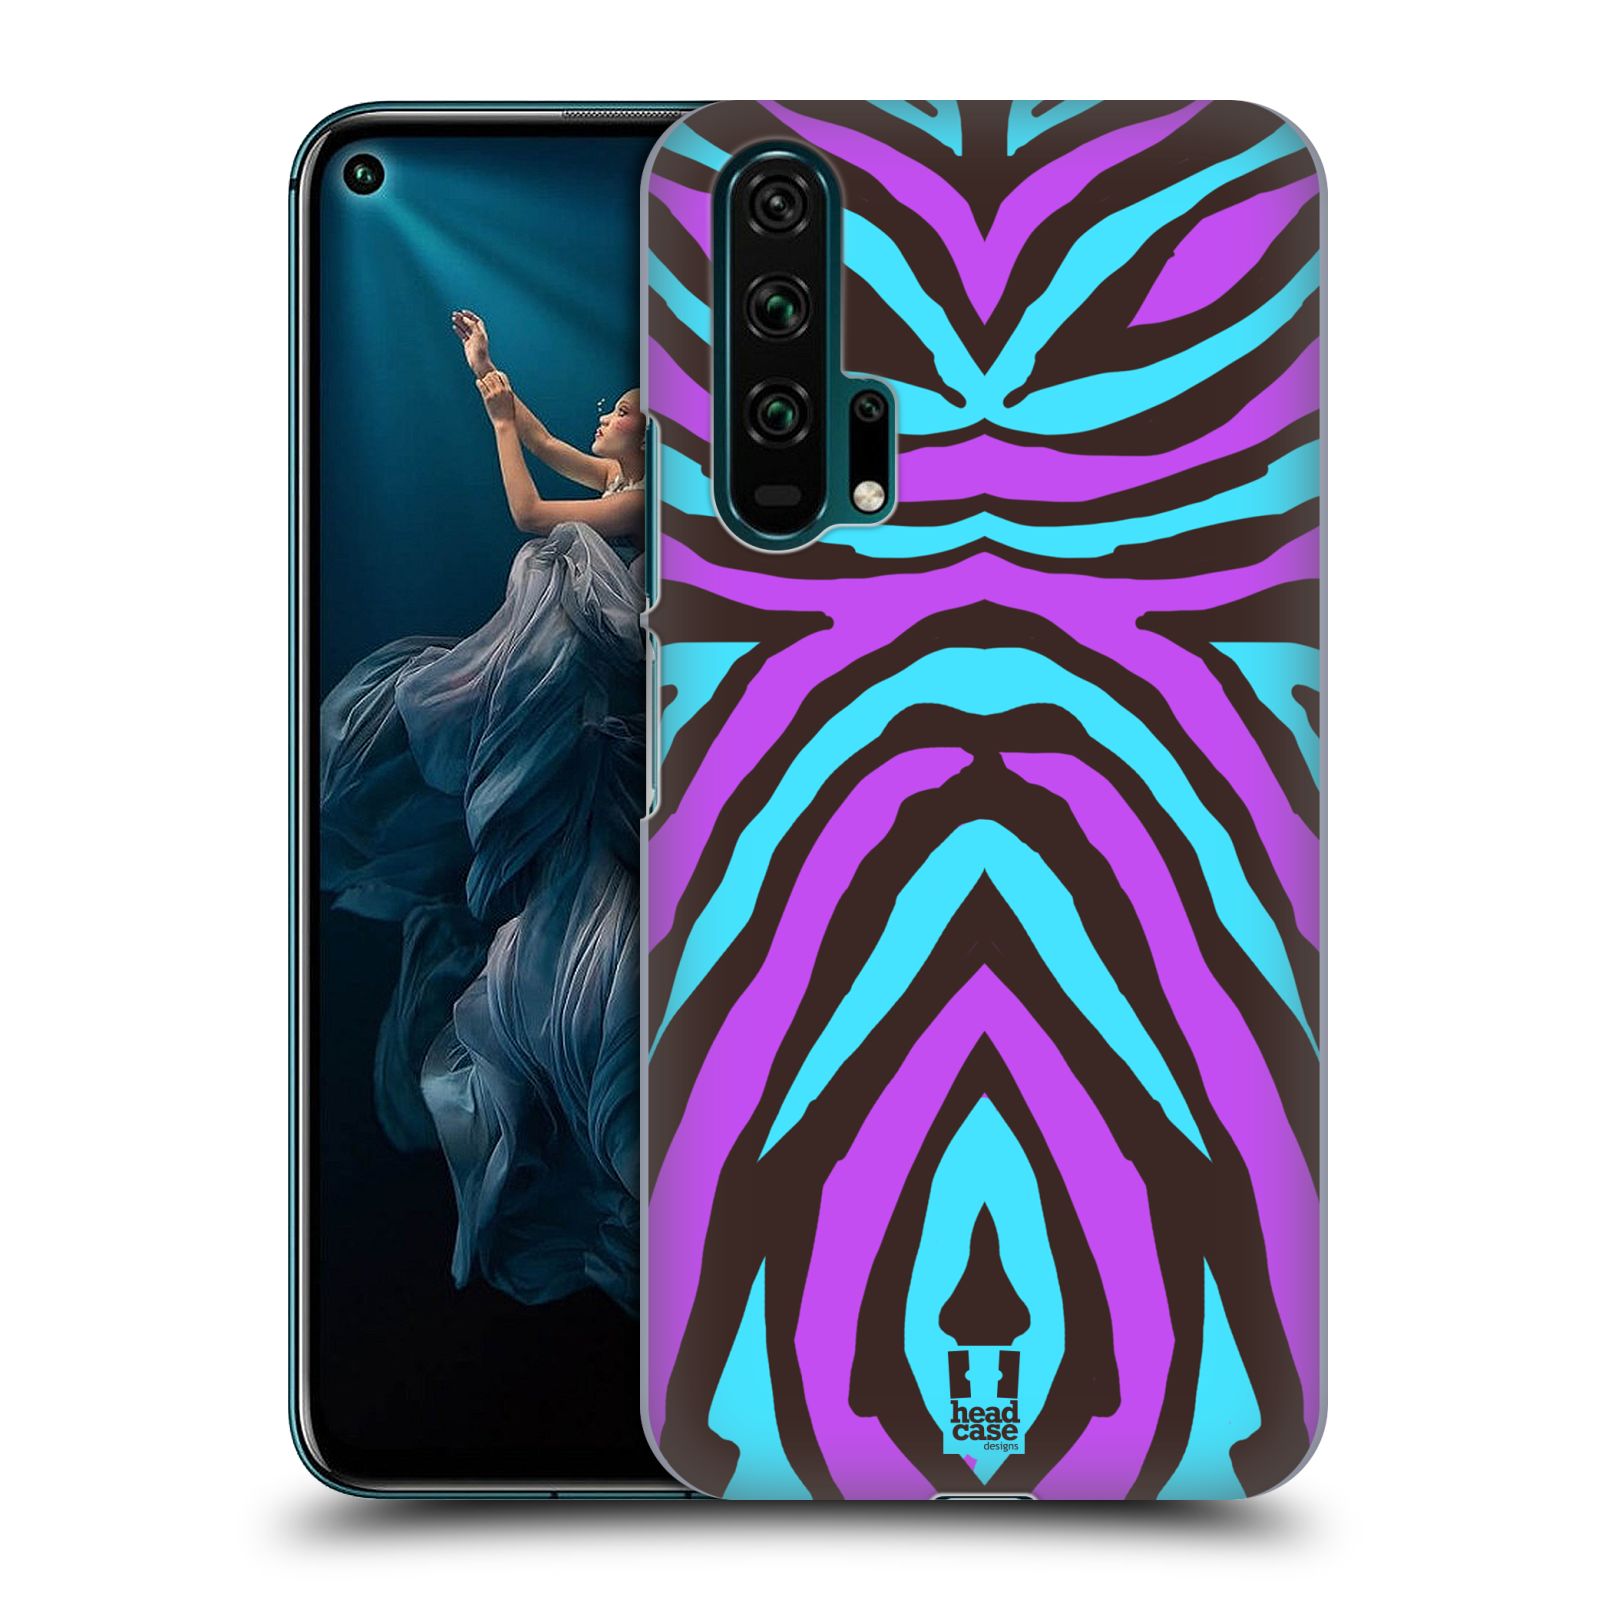 Pouzdro na mobil Honor 20 PRO - HEAD CASE - vzor Divočina zvíře 2 bláznivé pruhy fialová a modrá